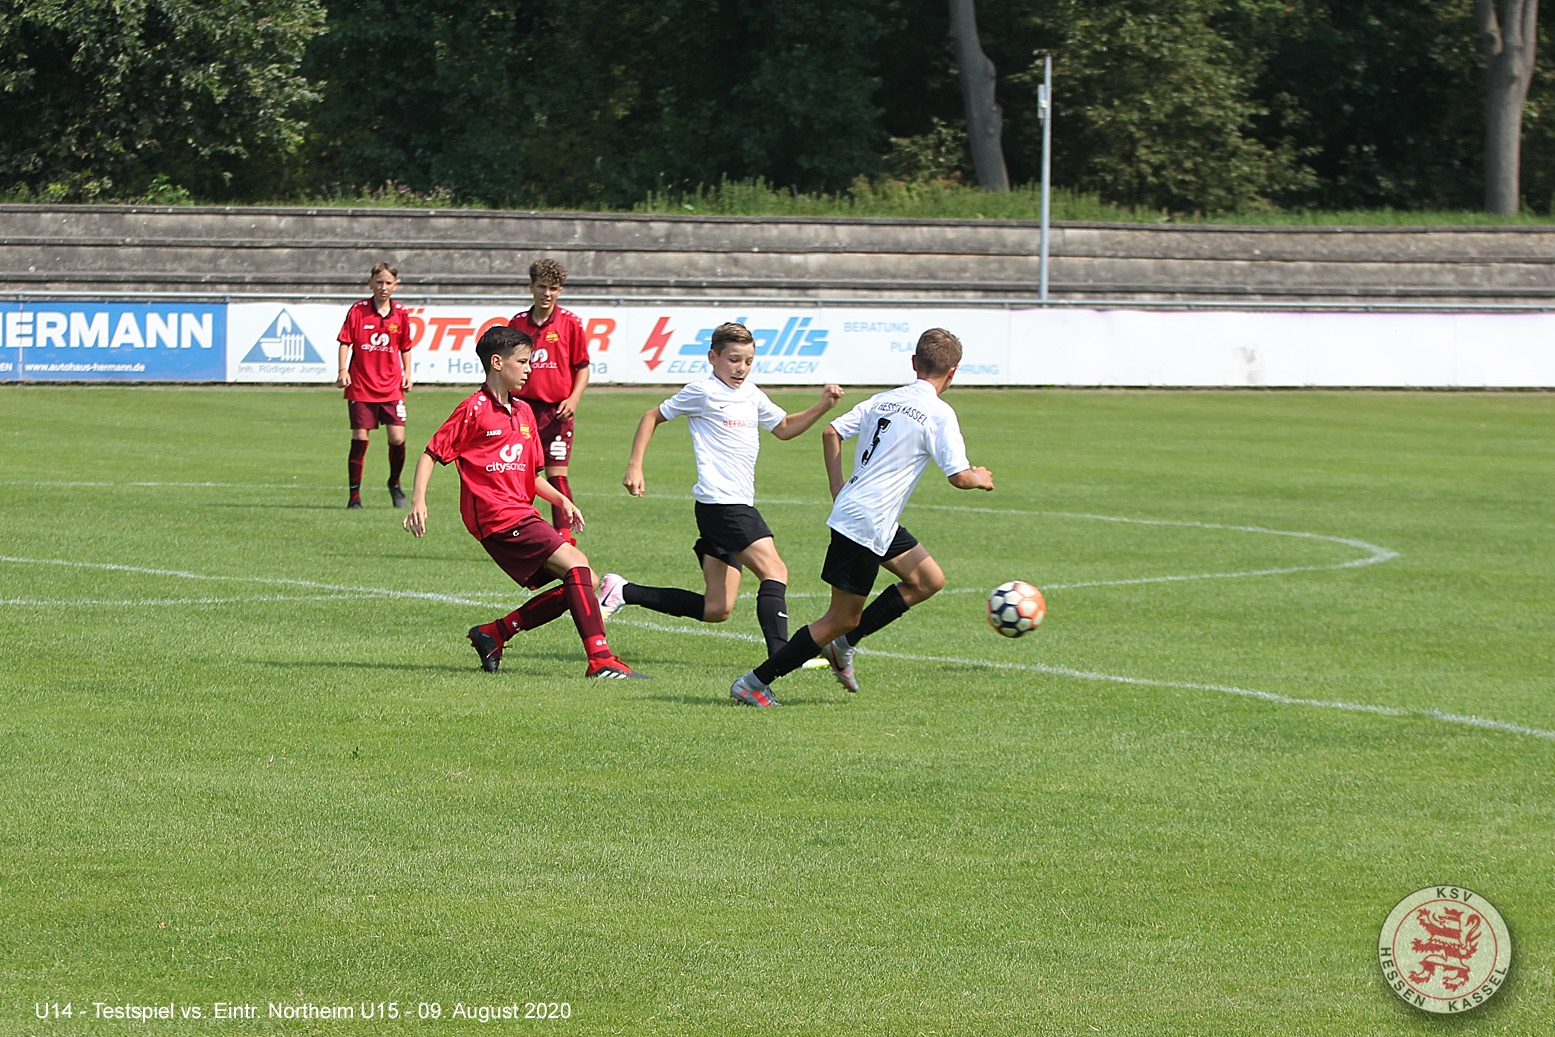 Eintracht Northeim U15 - U14